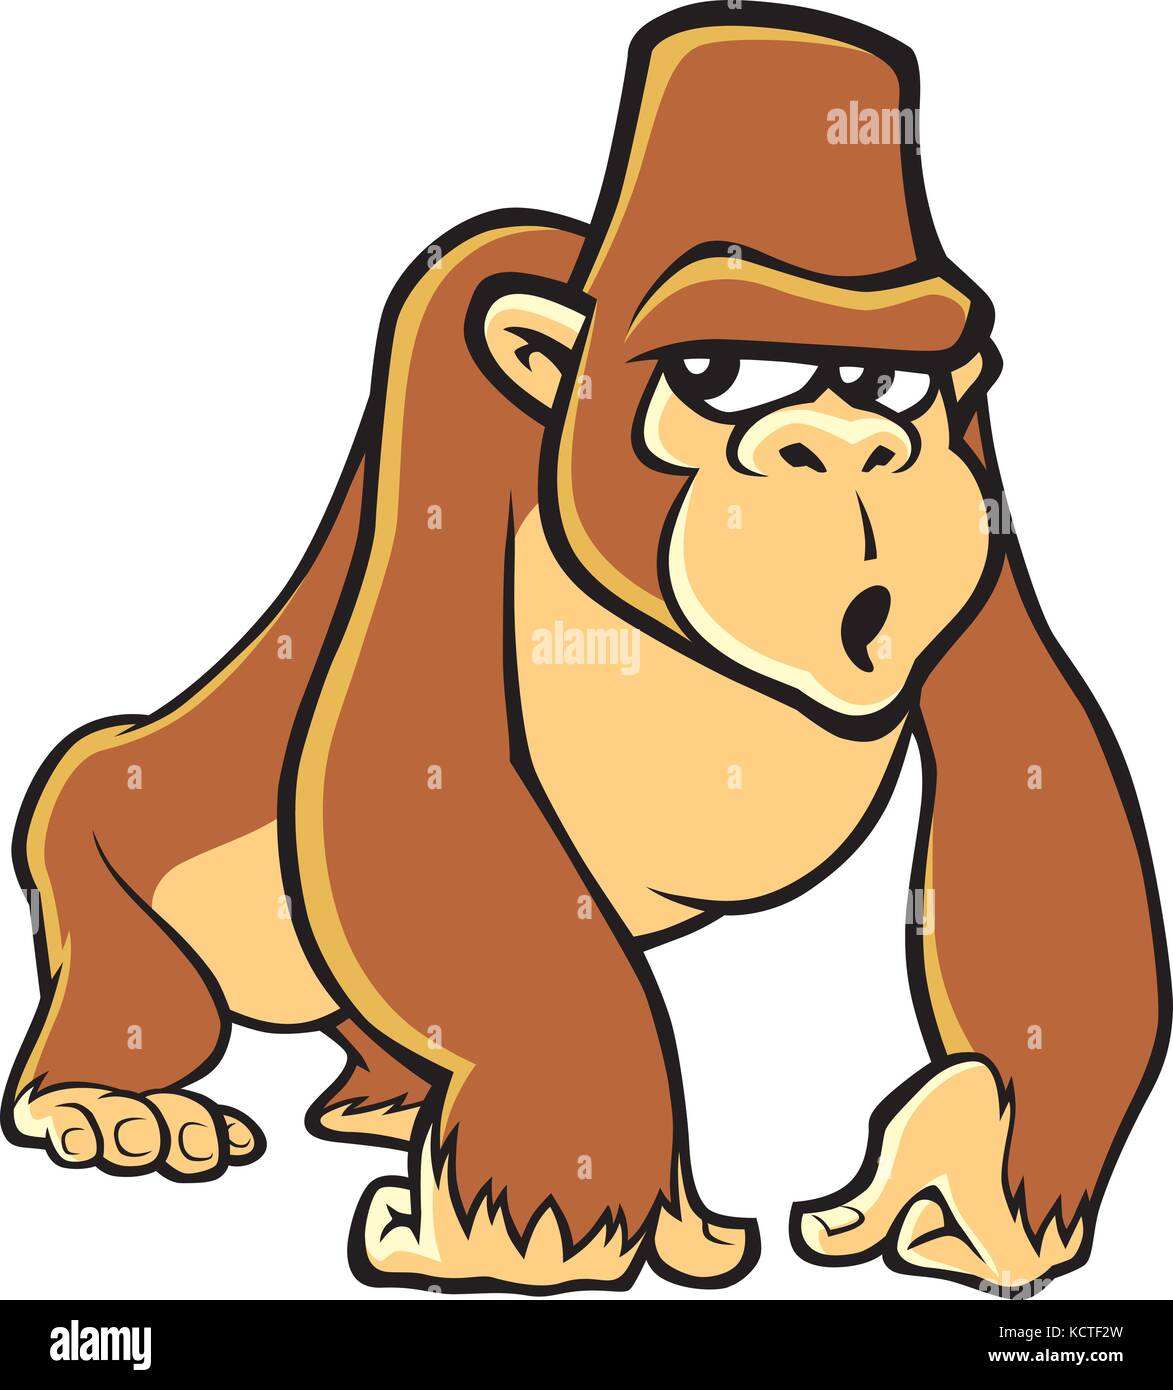 Gorilla cartoon immagini e fotografie stock ad alta risoluzione - Alamy